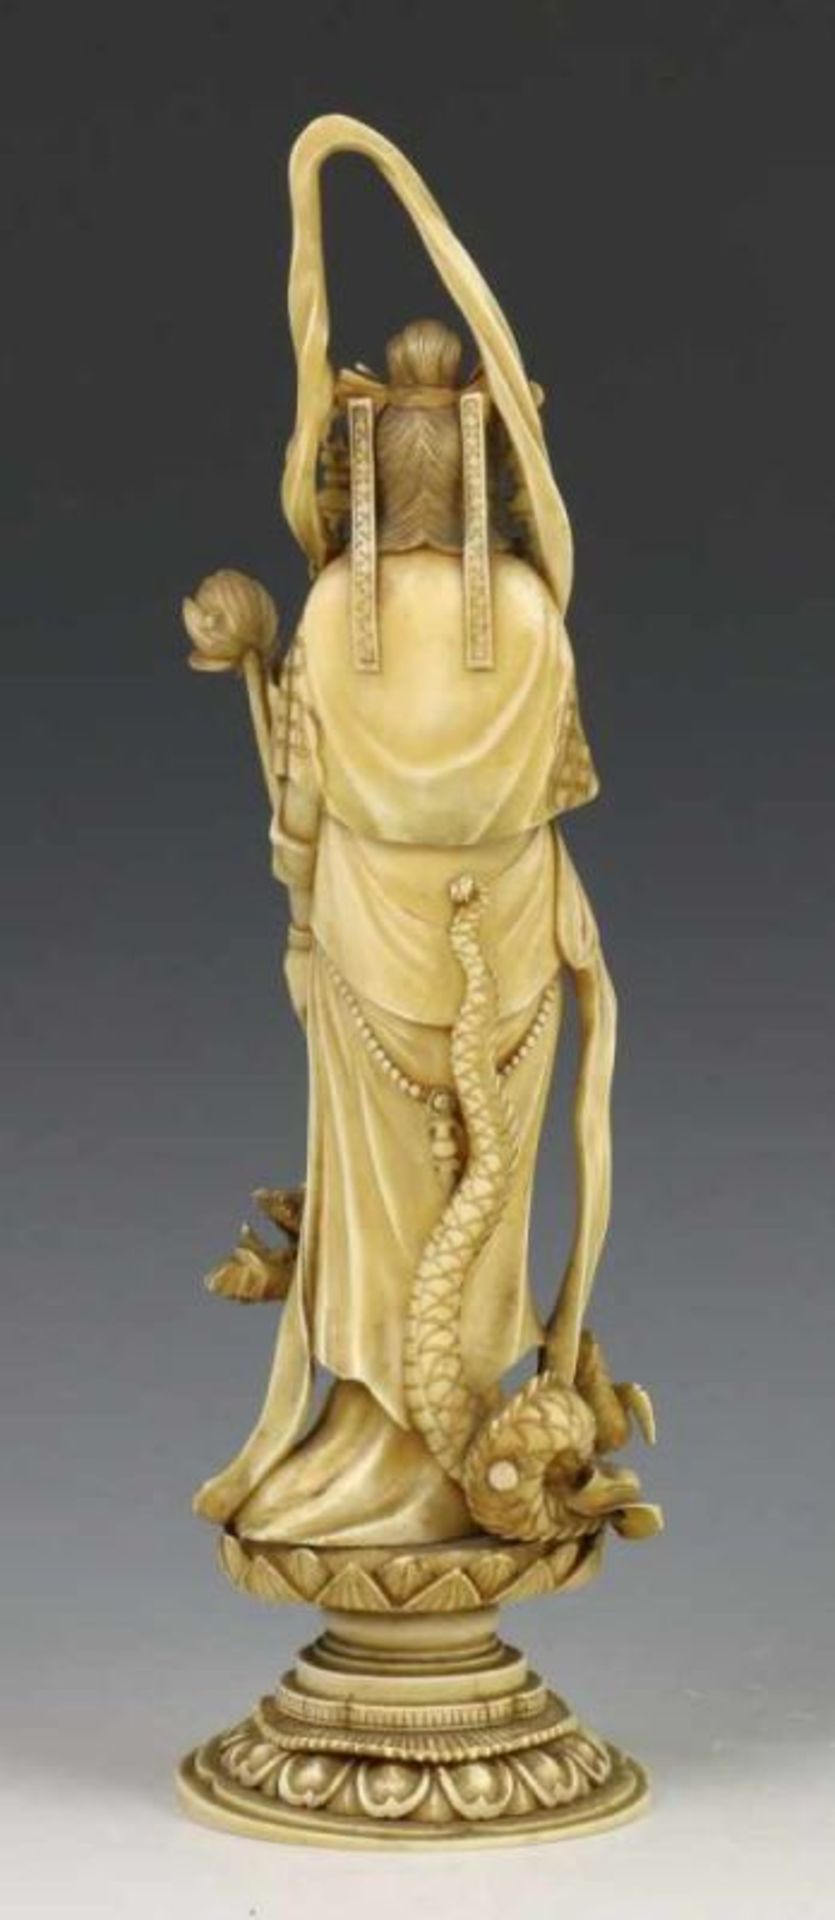 China, ivoren snijwerk, 19e eeuw; Liggend figuur met opiumpijp in de hand. Gesigneerd met vier